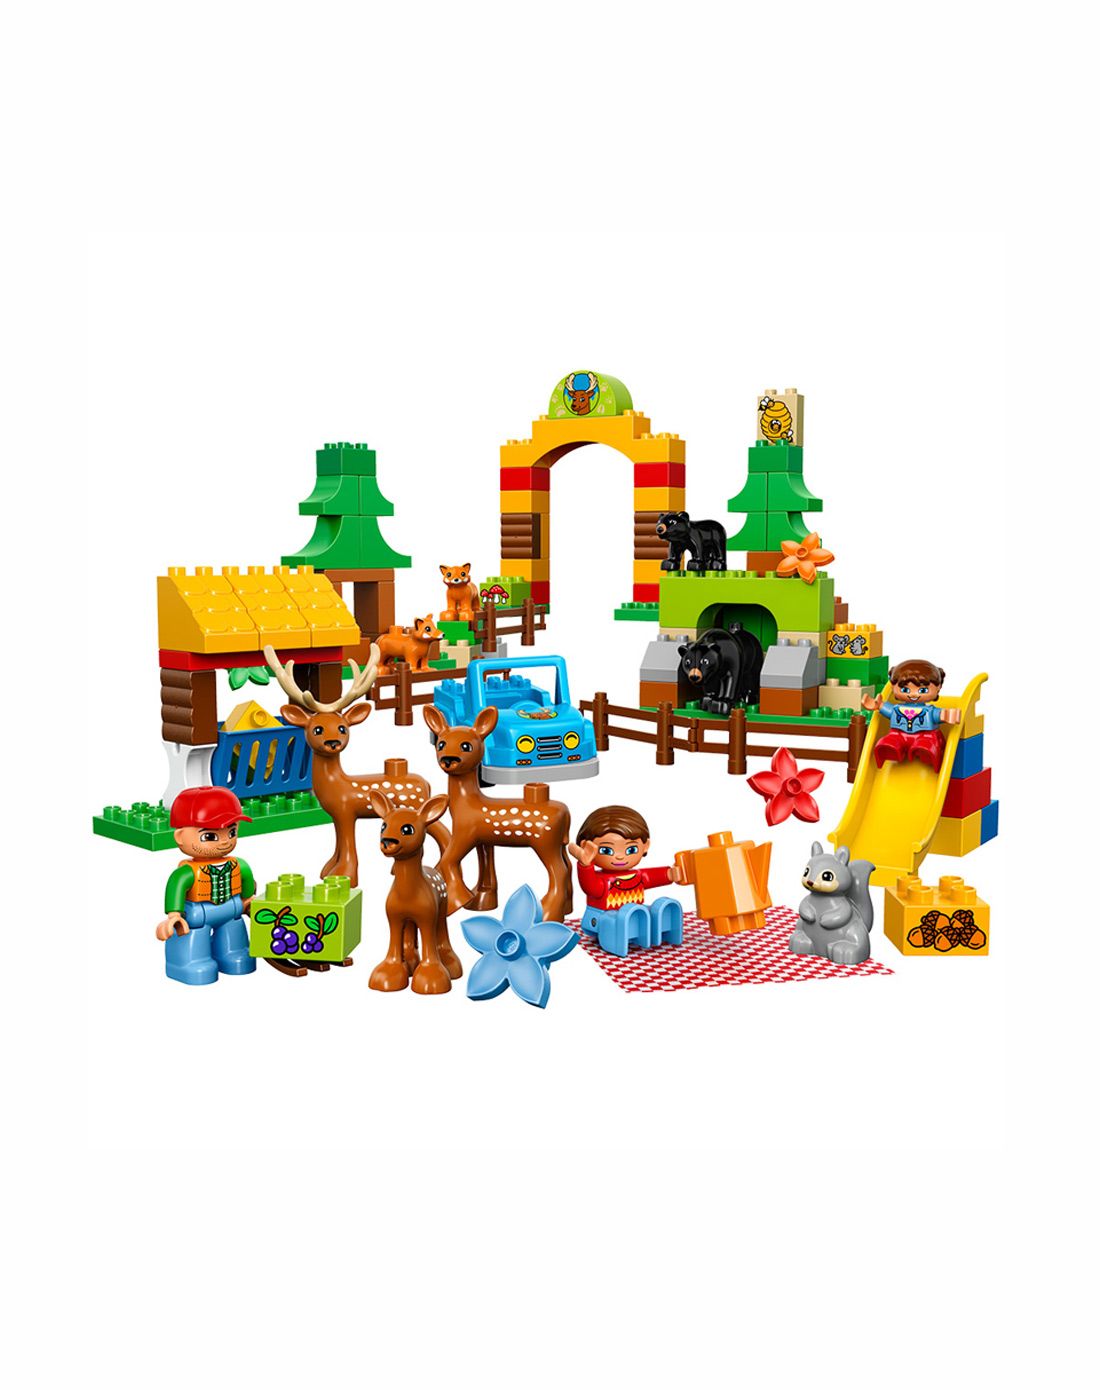 乐高lego国际顶级拼插益智玩具专场直发货森林主题:野生公园